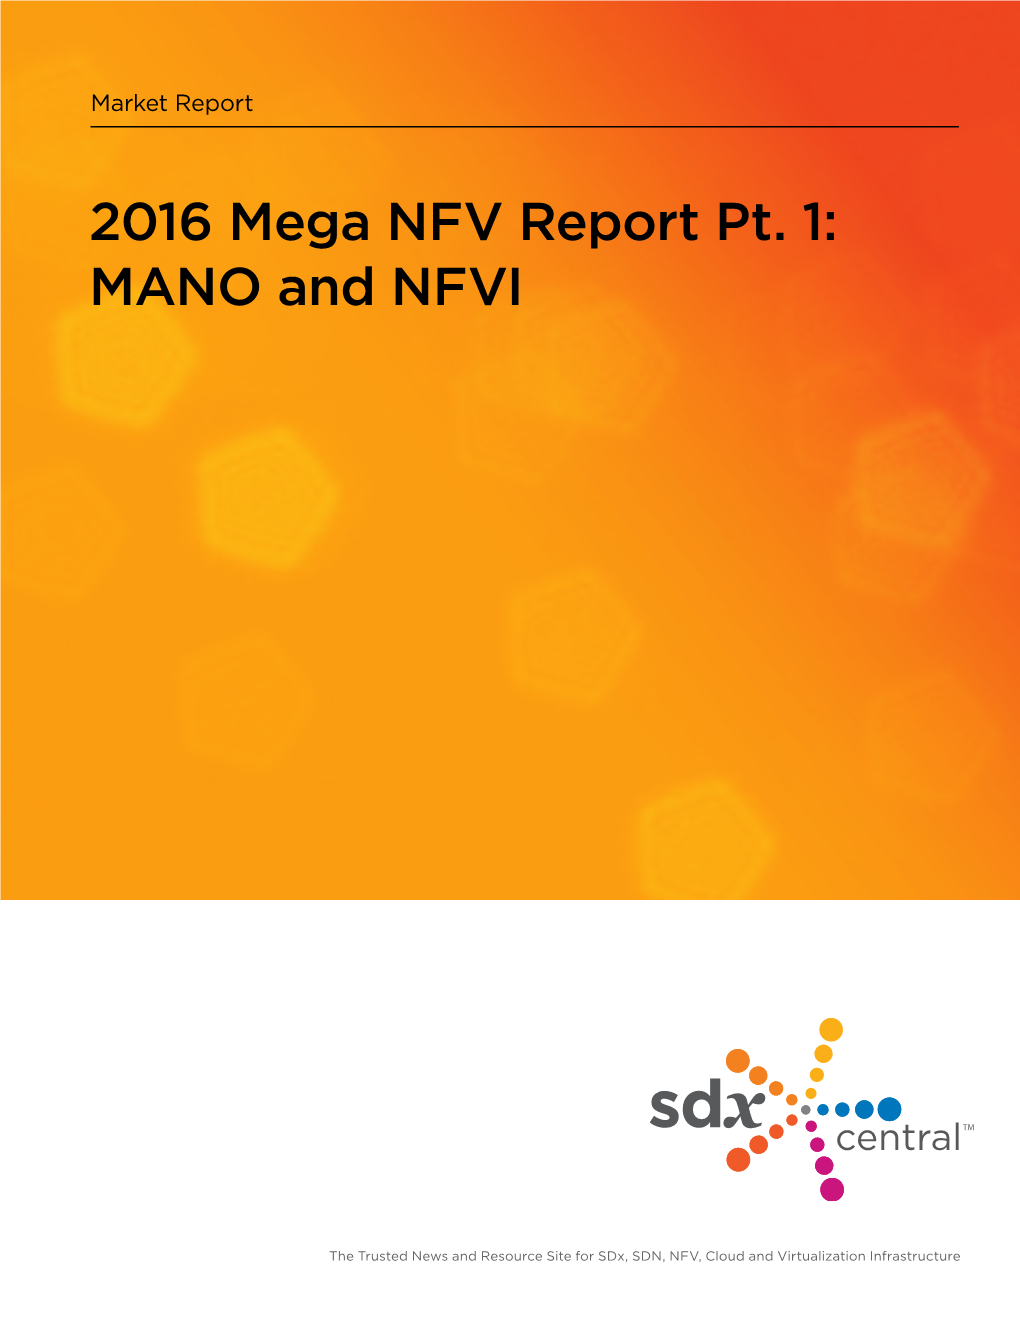 2016 Mega NFV Report Pt. 1: MANO and NFVI